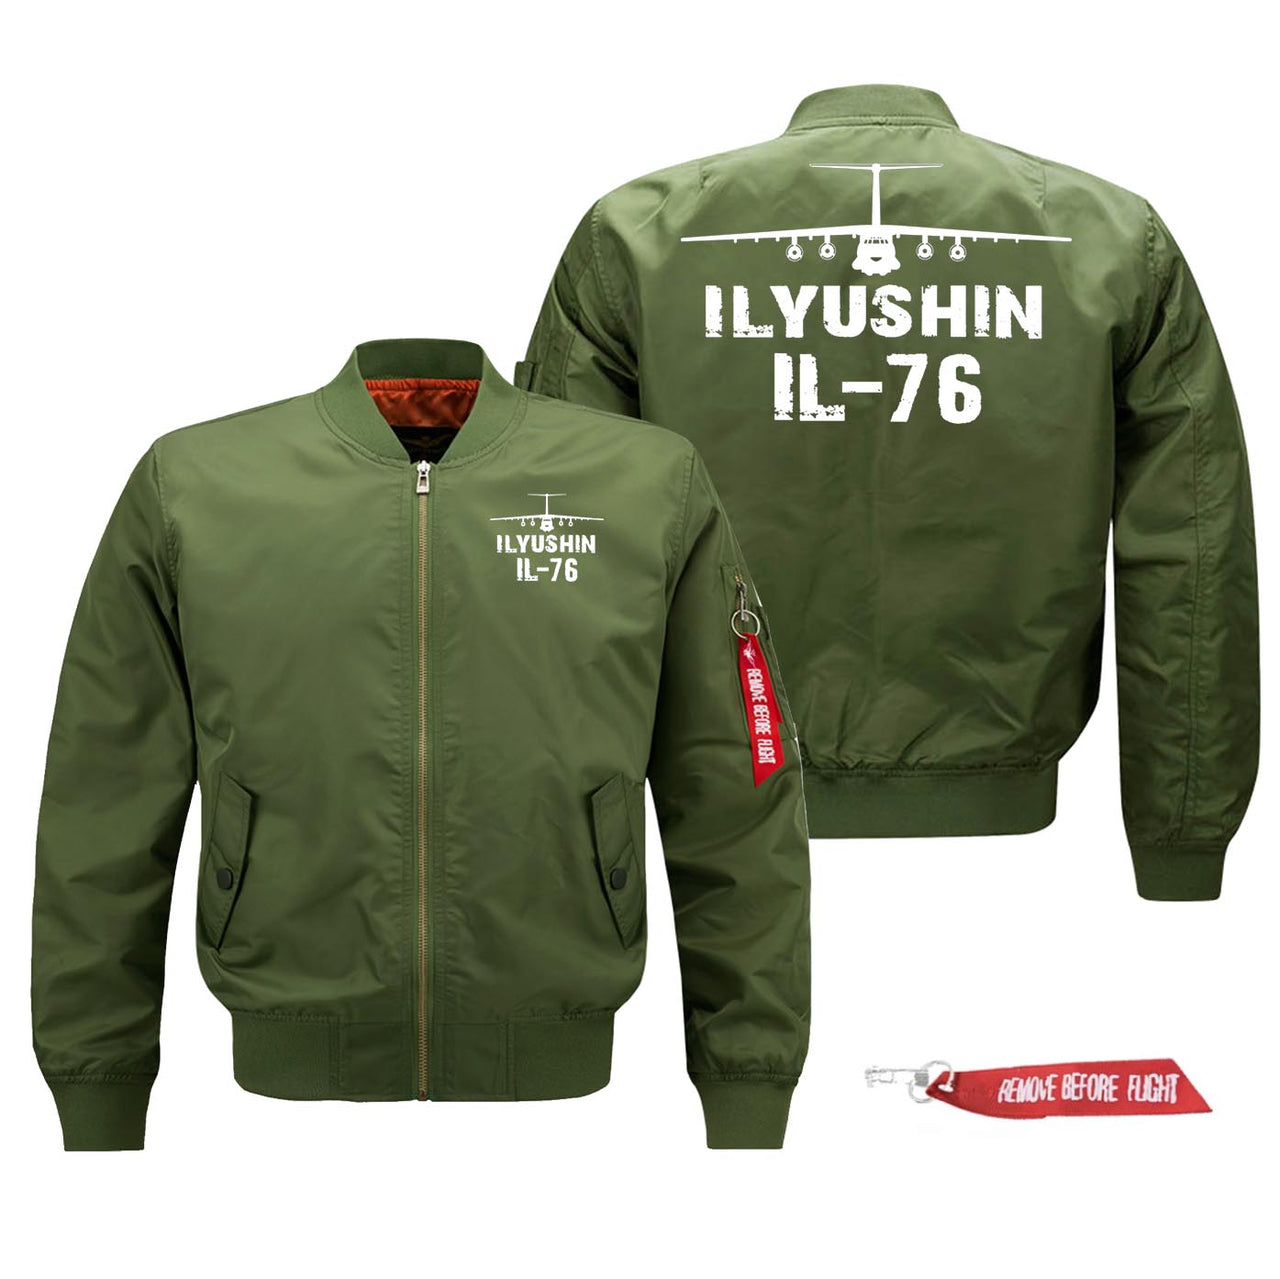 Ilyushin IL-76 Silhouette & Designed Pilot Jackets (Customizable)